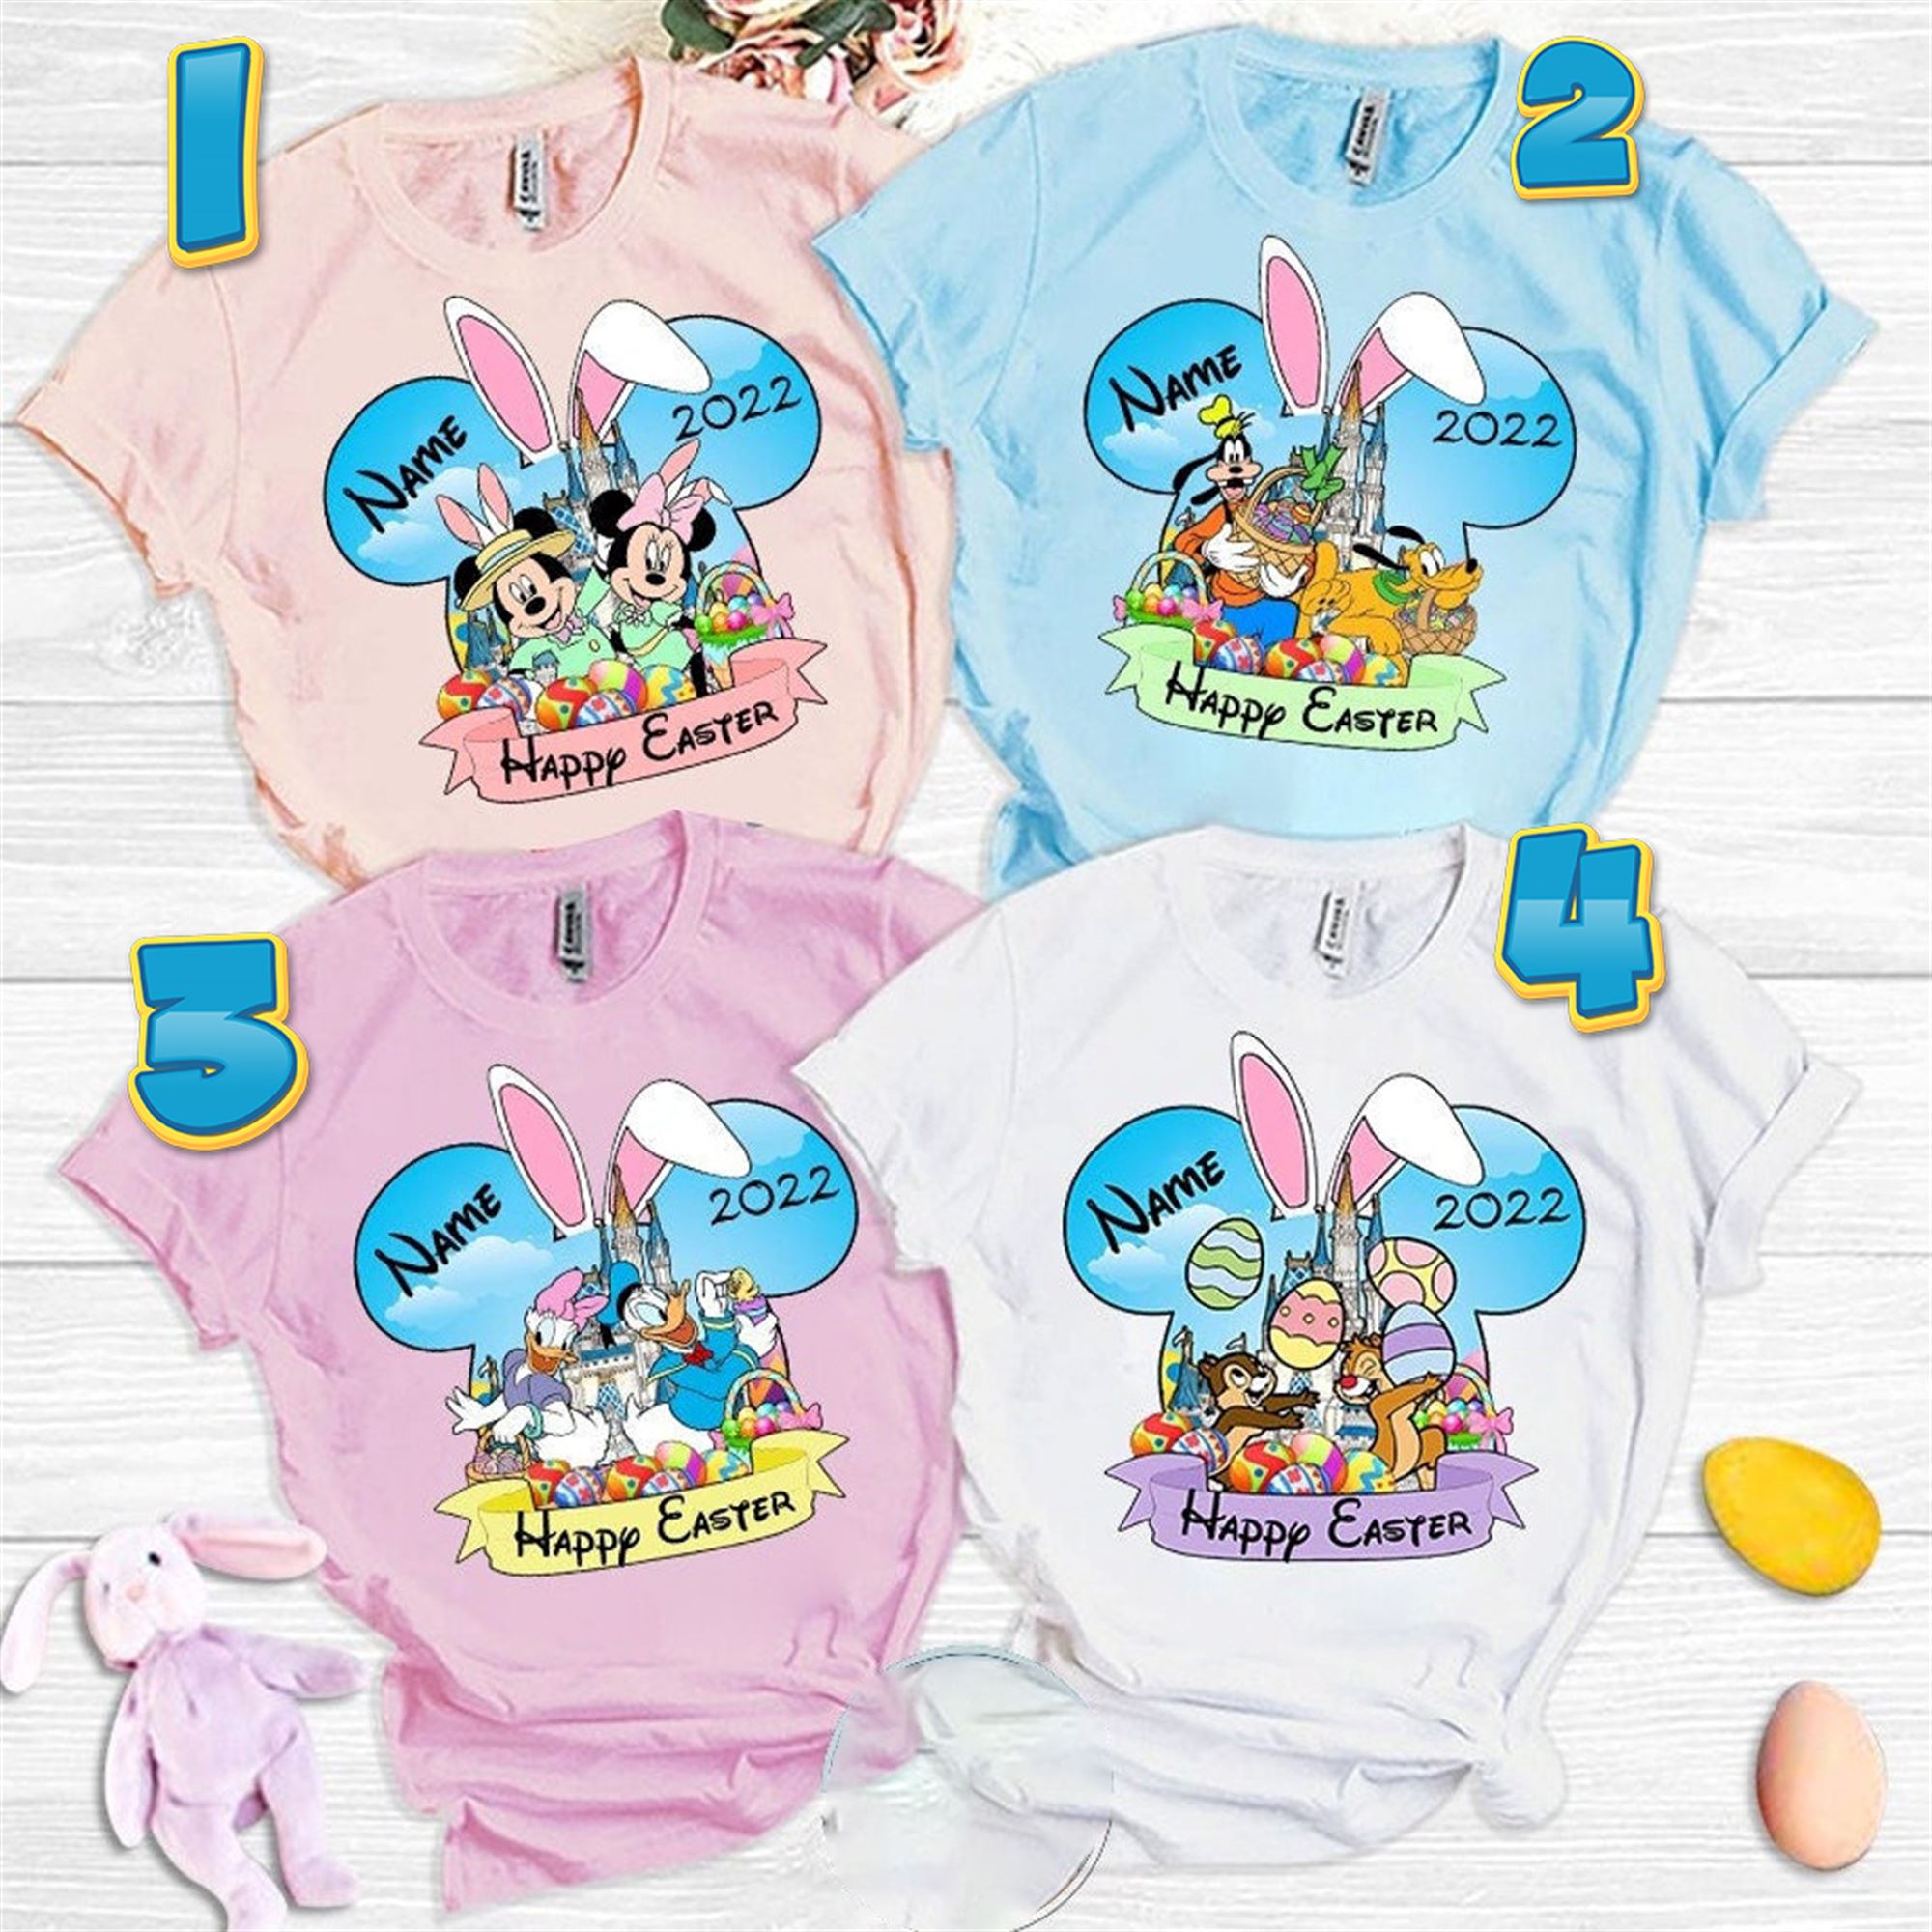 Custom-made Mickey Rabbit Easter Disney Family Shirts 